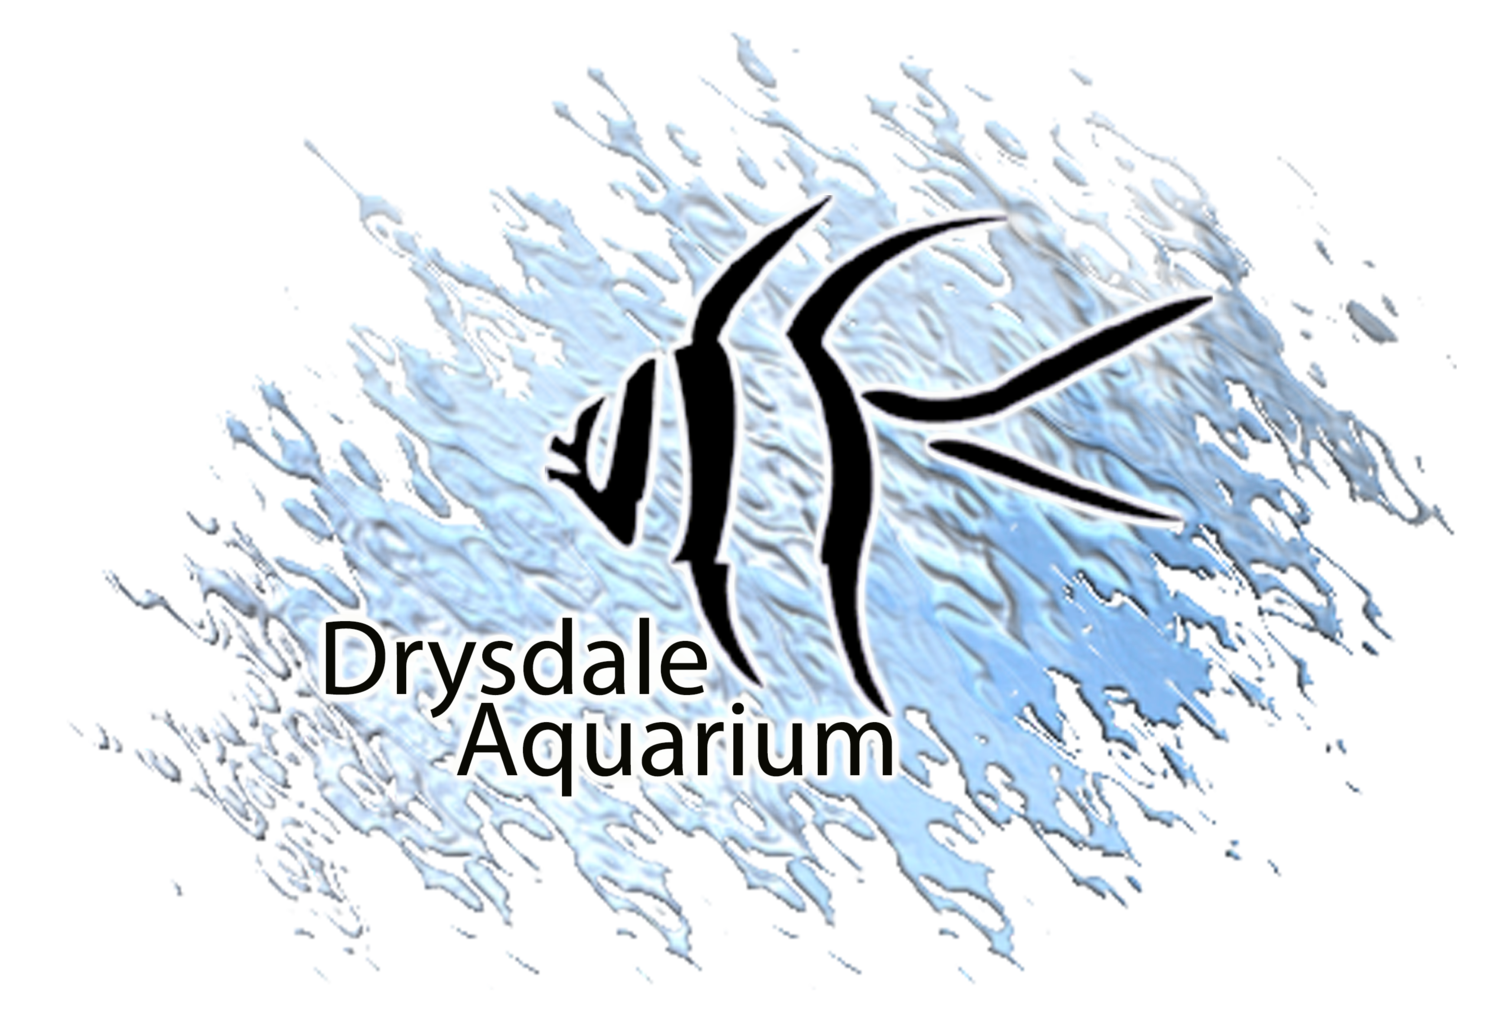 Drysdale Aquarium, Inc